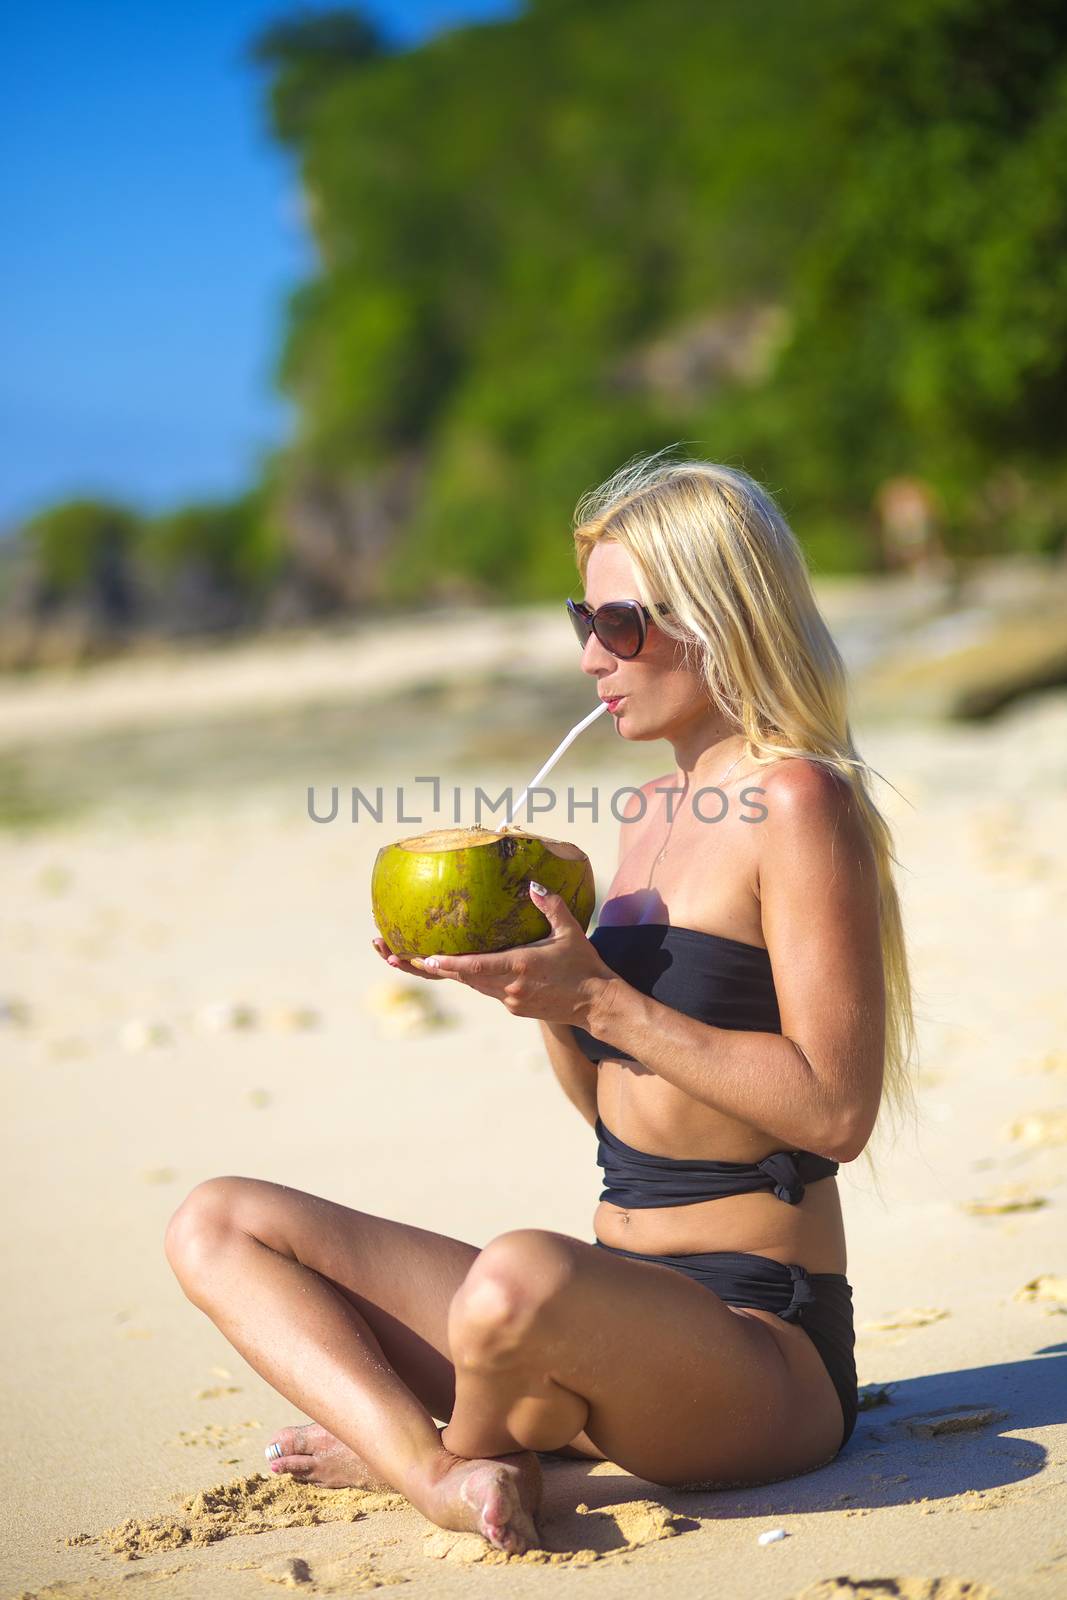 Woman in Bikini by truphoto